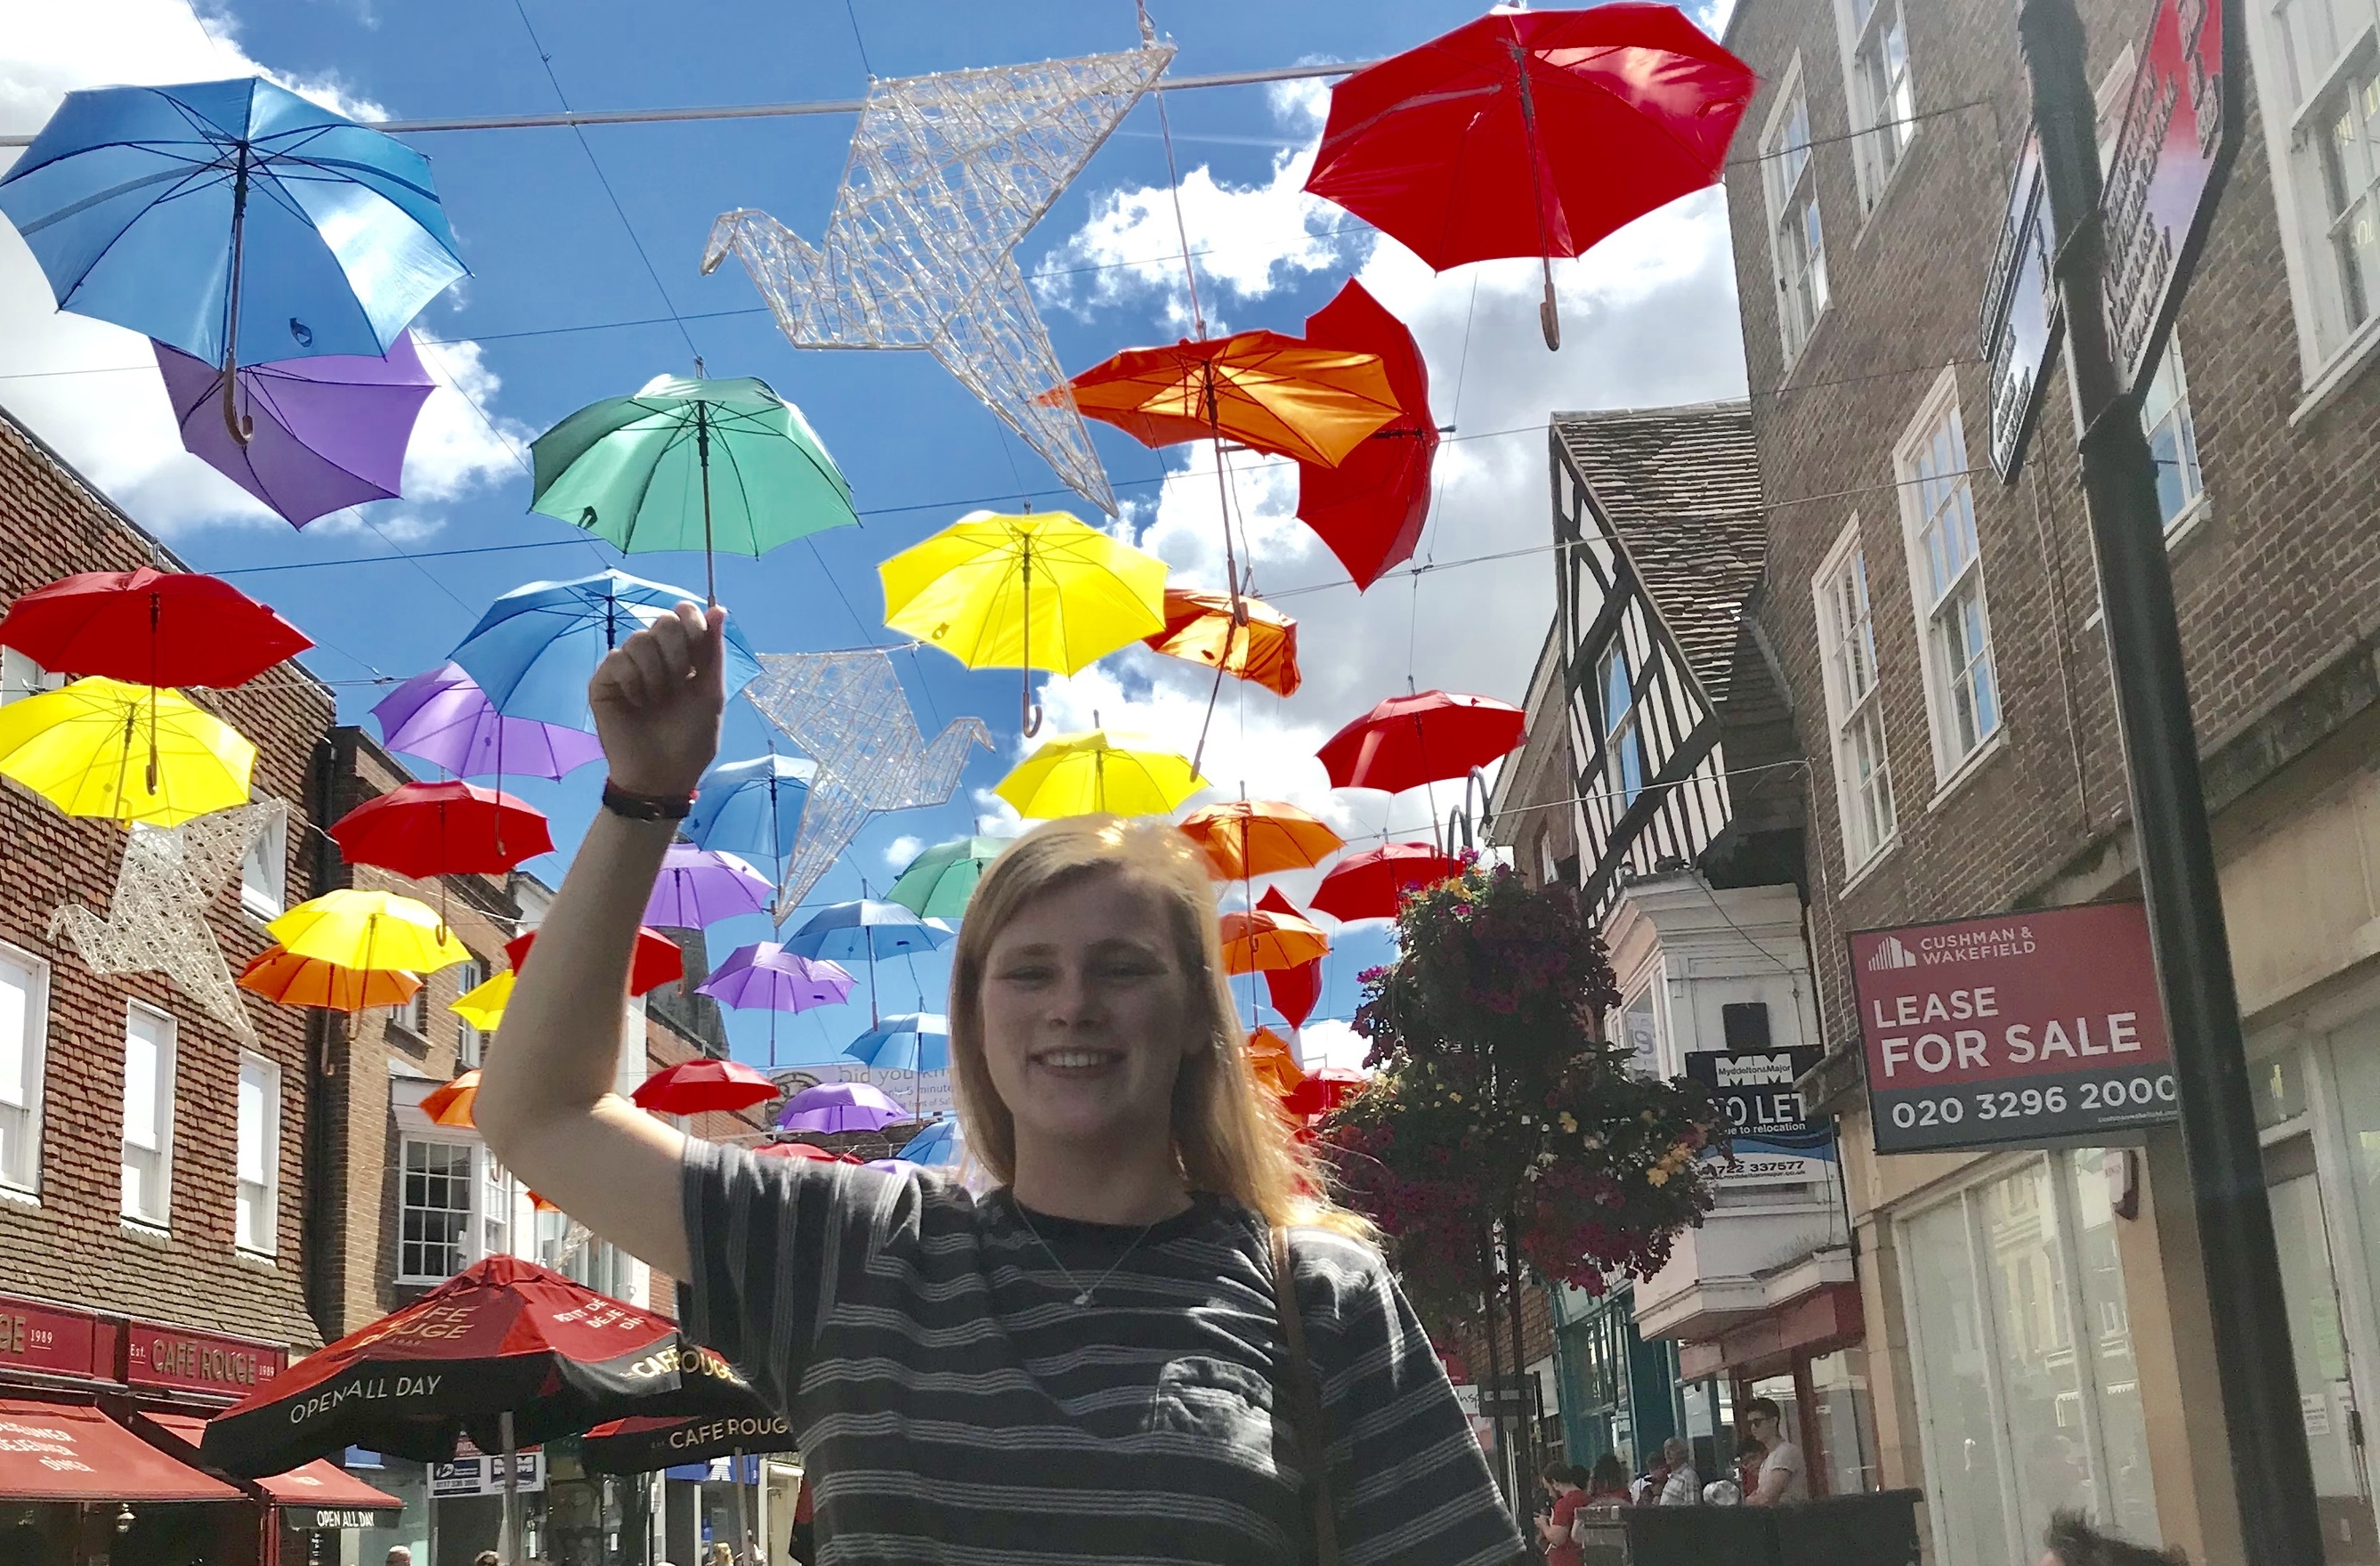 (Fotos+Video) Mary Poppins Challenge inspiró una iniciativa sana y segura para hacer felices a muchas personas